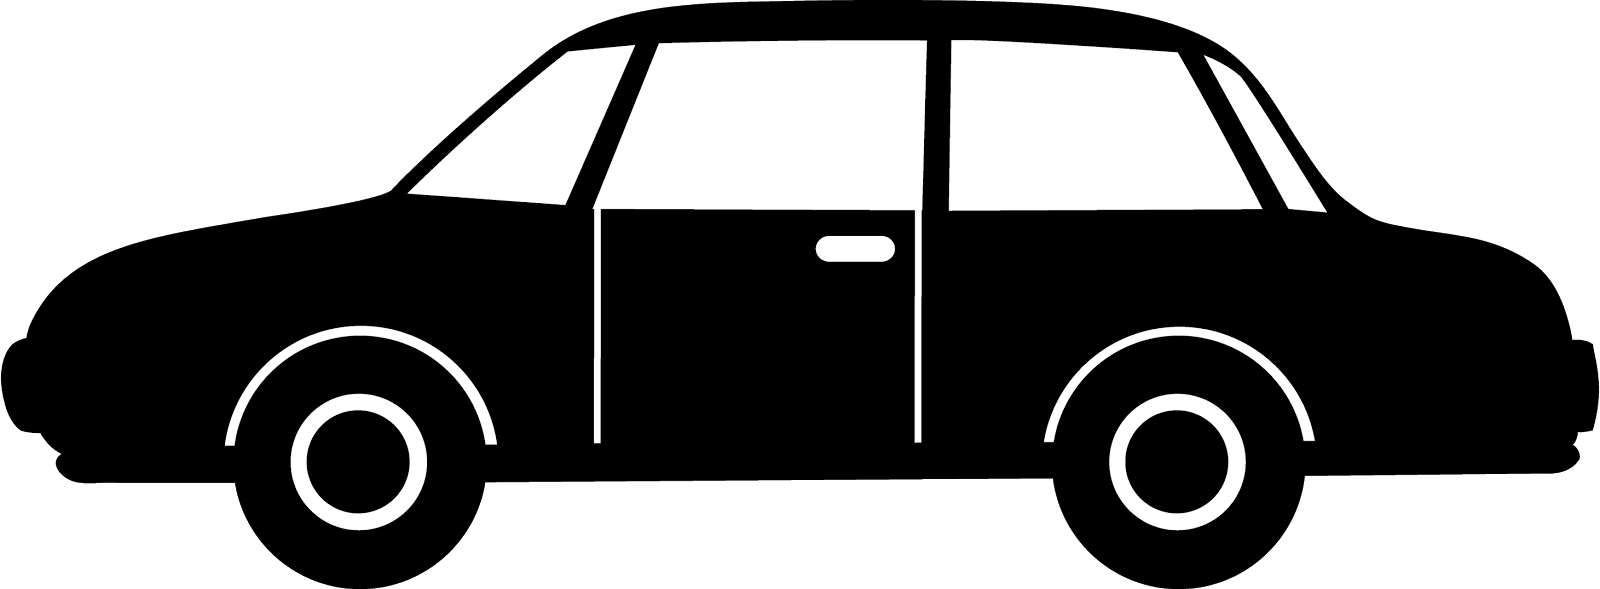 clipart car profile